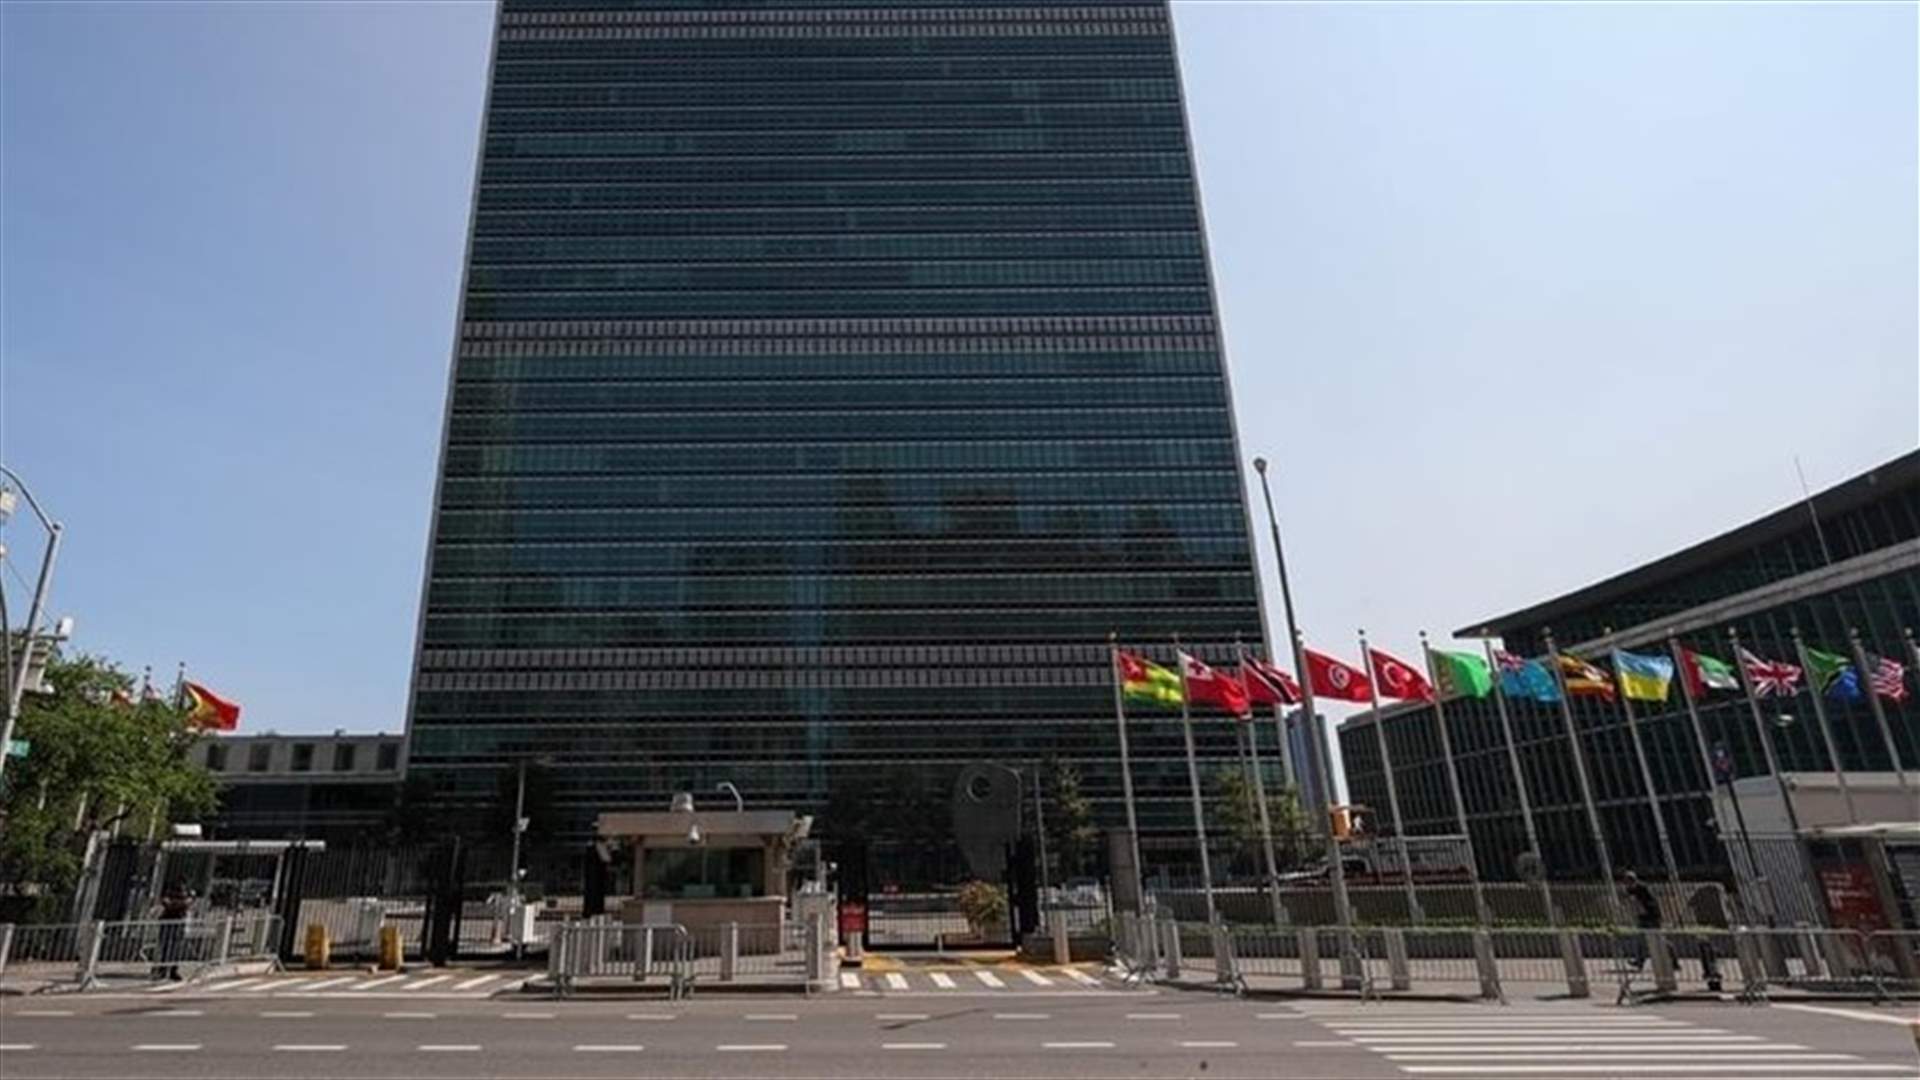 طوق أمني حول مقر الأمم المتحدة في نيويورك بعد رصد وتوقيف مسلّح خارج المبنى